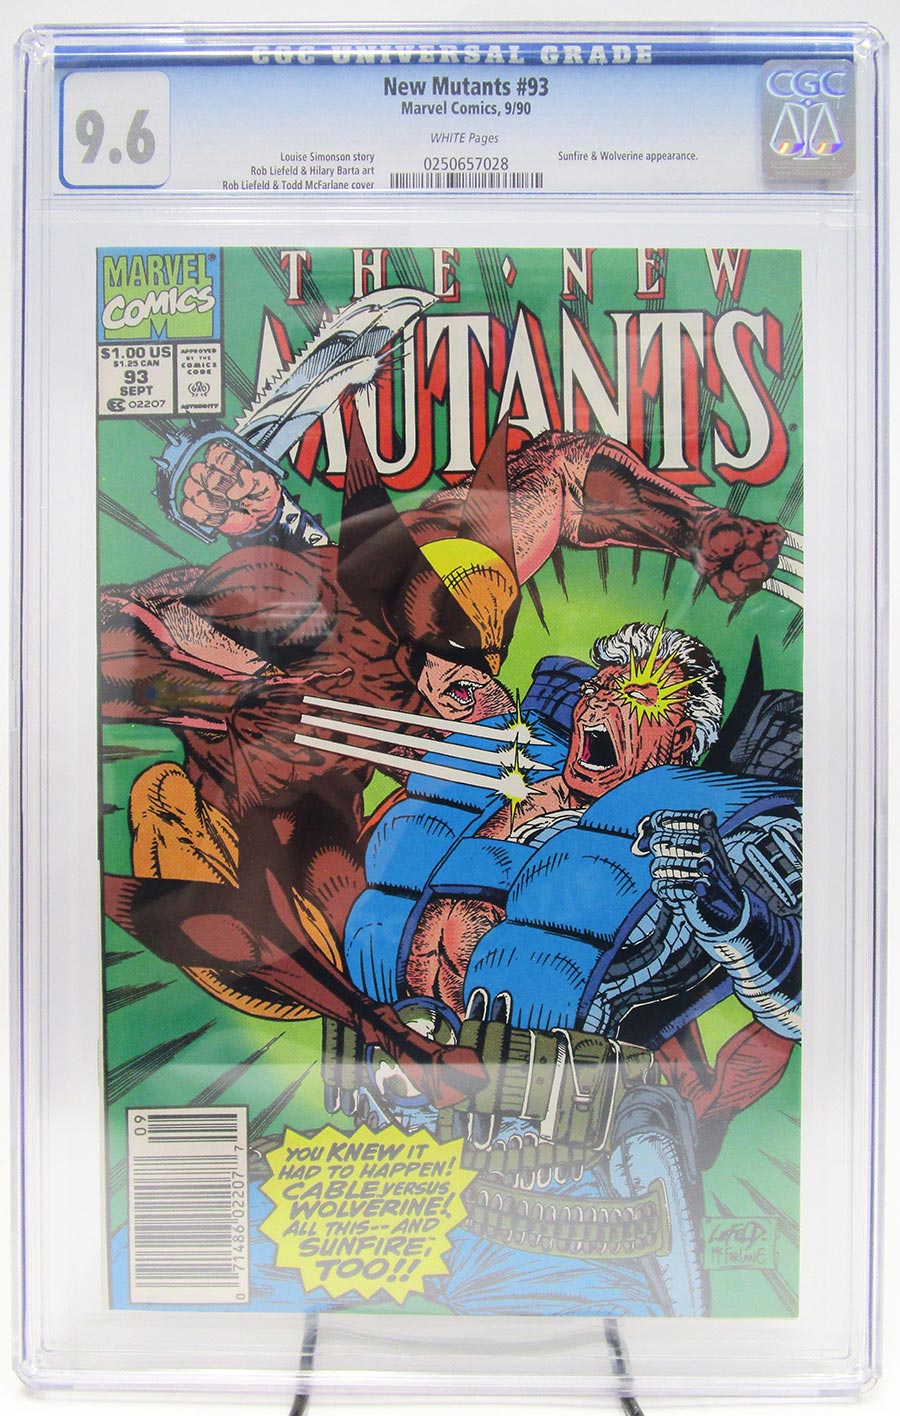 New Mutants #93 Cover C CGC 9.6